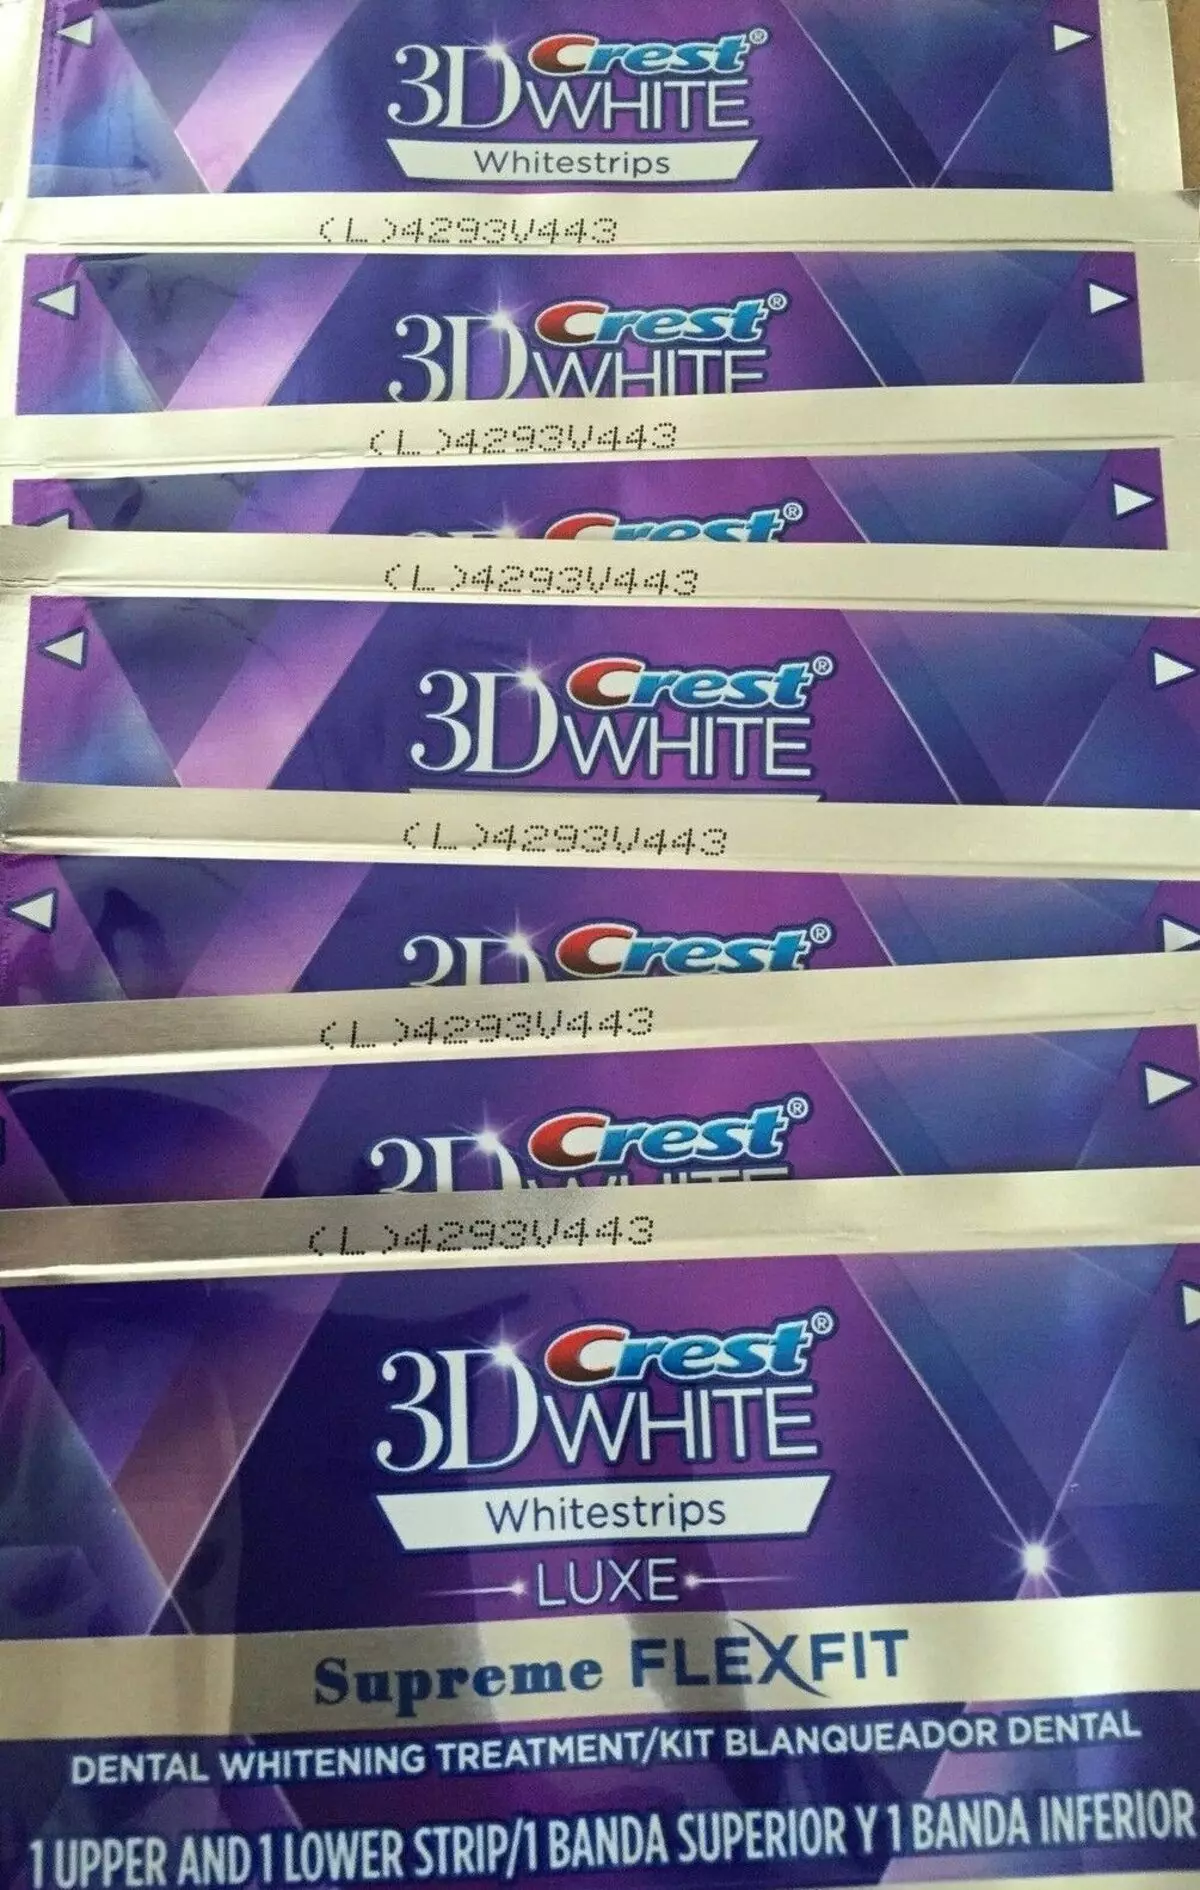 Whiting Strips Crest 3d White: Maitiro ekushandisa ivo kumuchera mazino? Mirayiridzo yeTrapa Whitestrips Professional Mhedzisiro uye Vamwe 16157_19